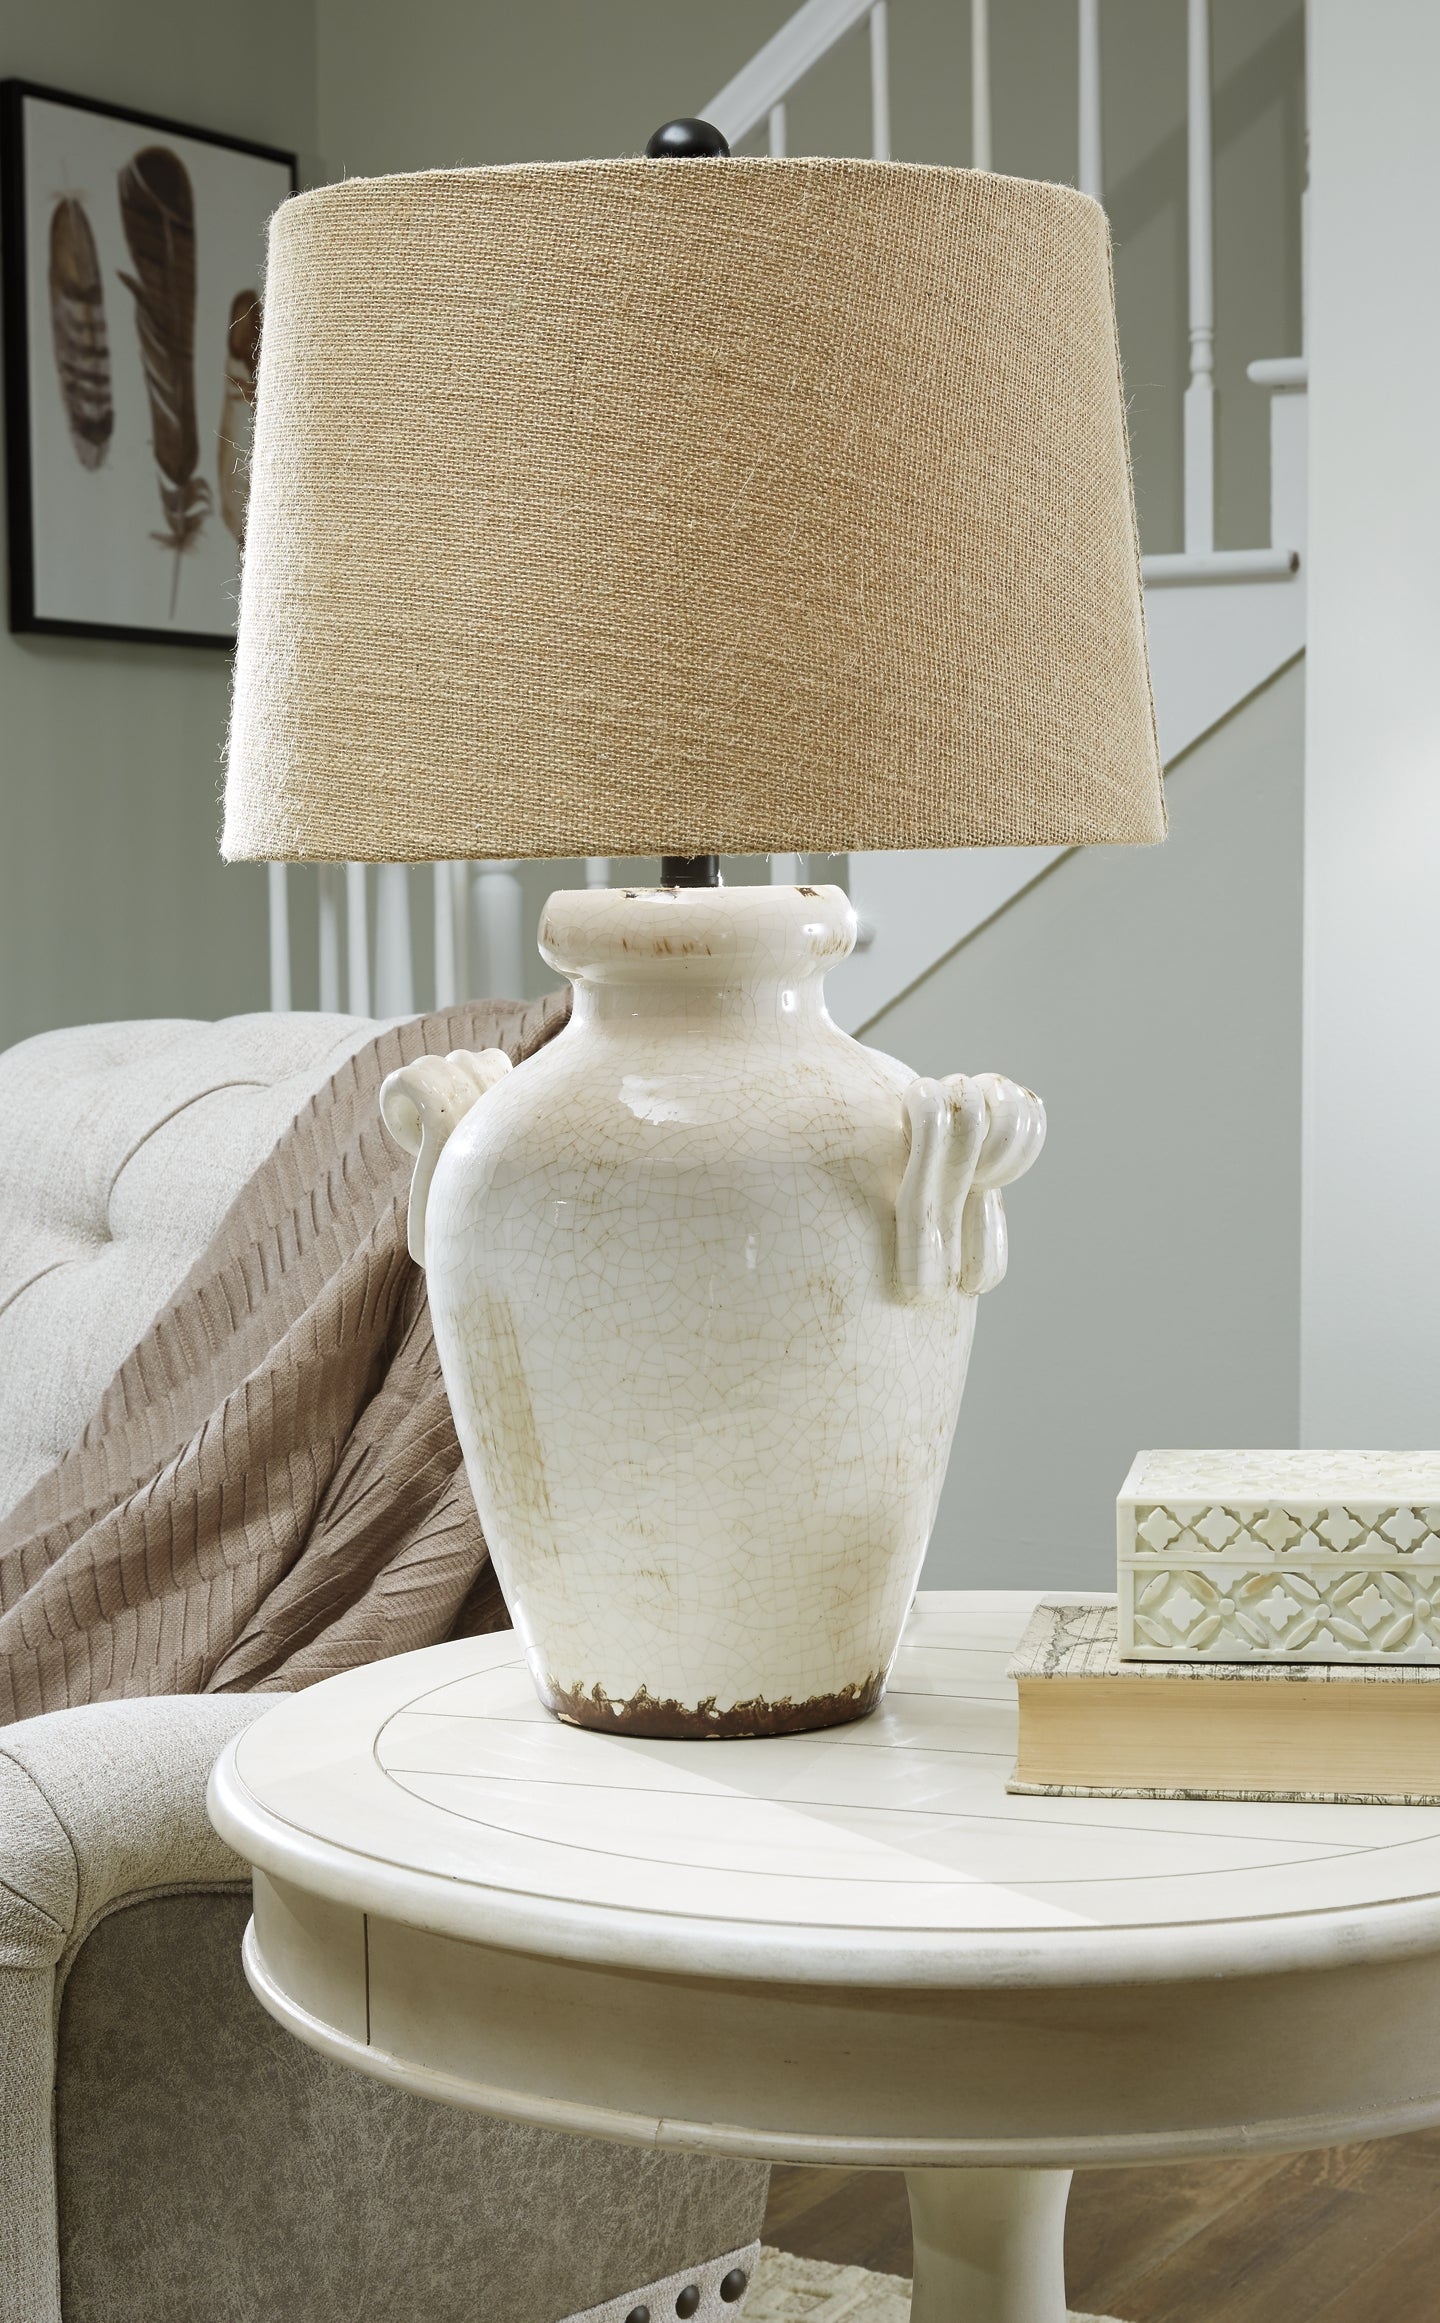 Emelda Ceramic Table Lamp (1/CN) Signature Design by Ashley®